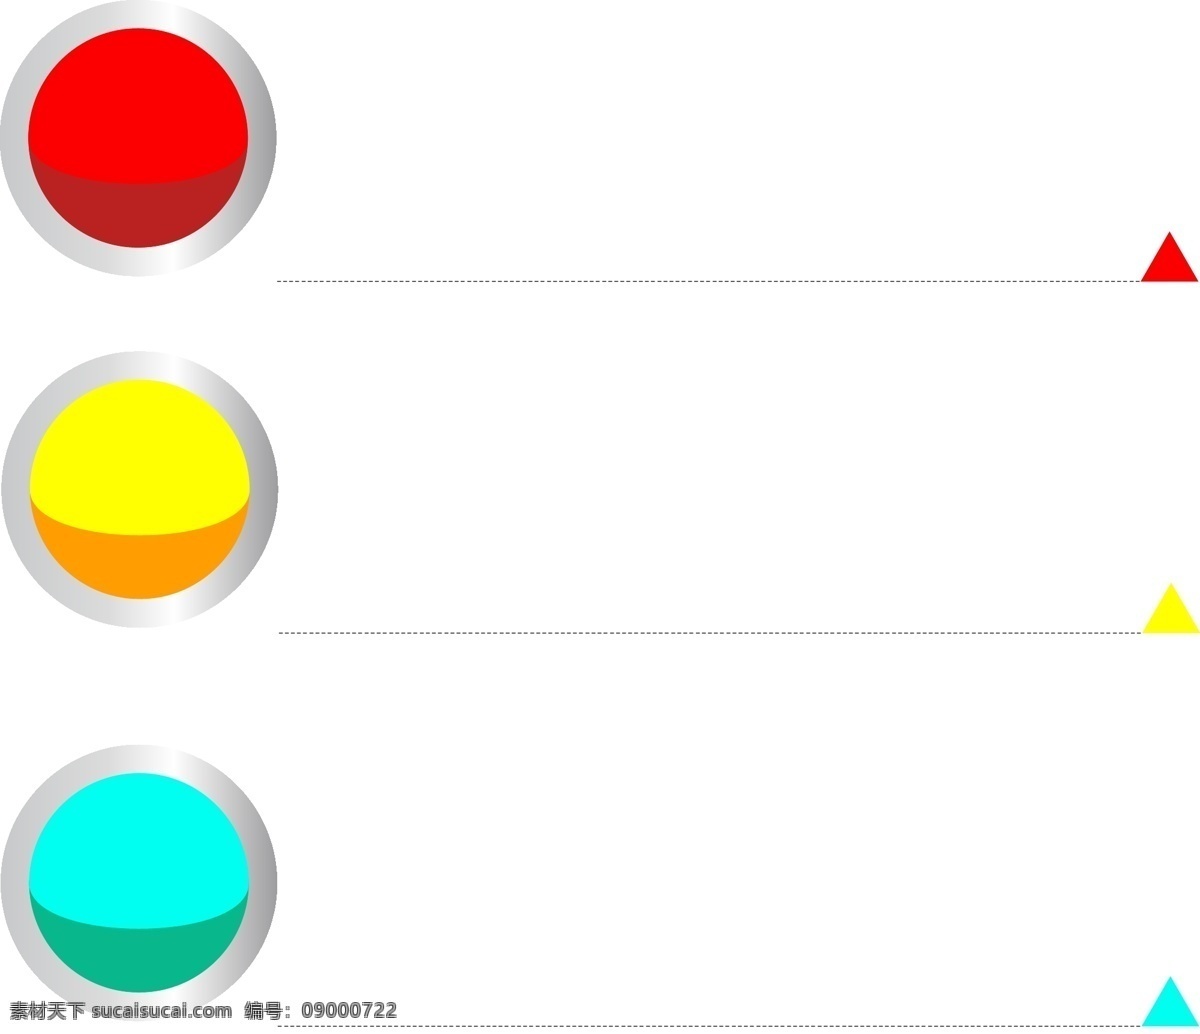 彩色 圆圈 分类 标签 彩色的圆圈 分类标签 三角 横线 数字序号 几何 目录页 ppt图表